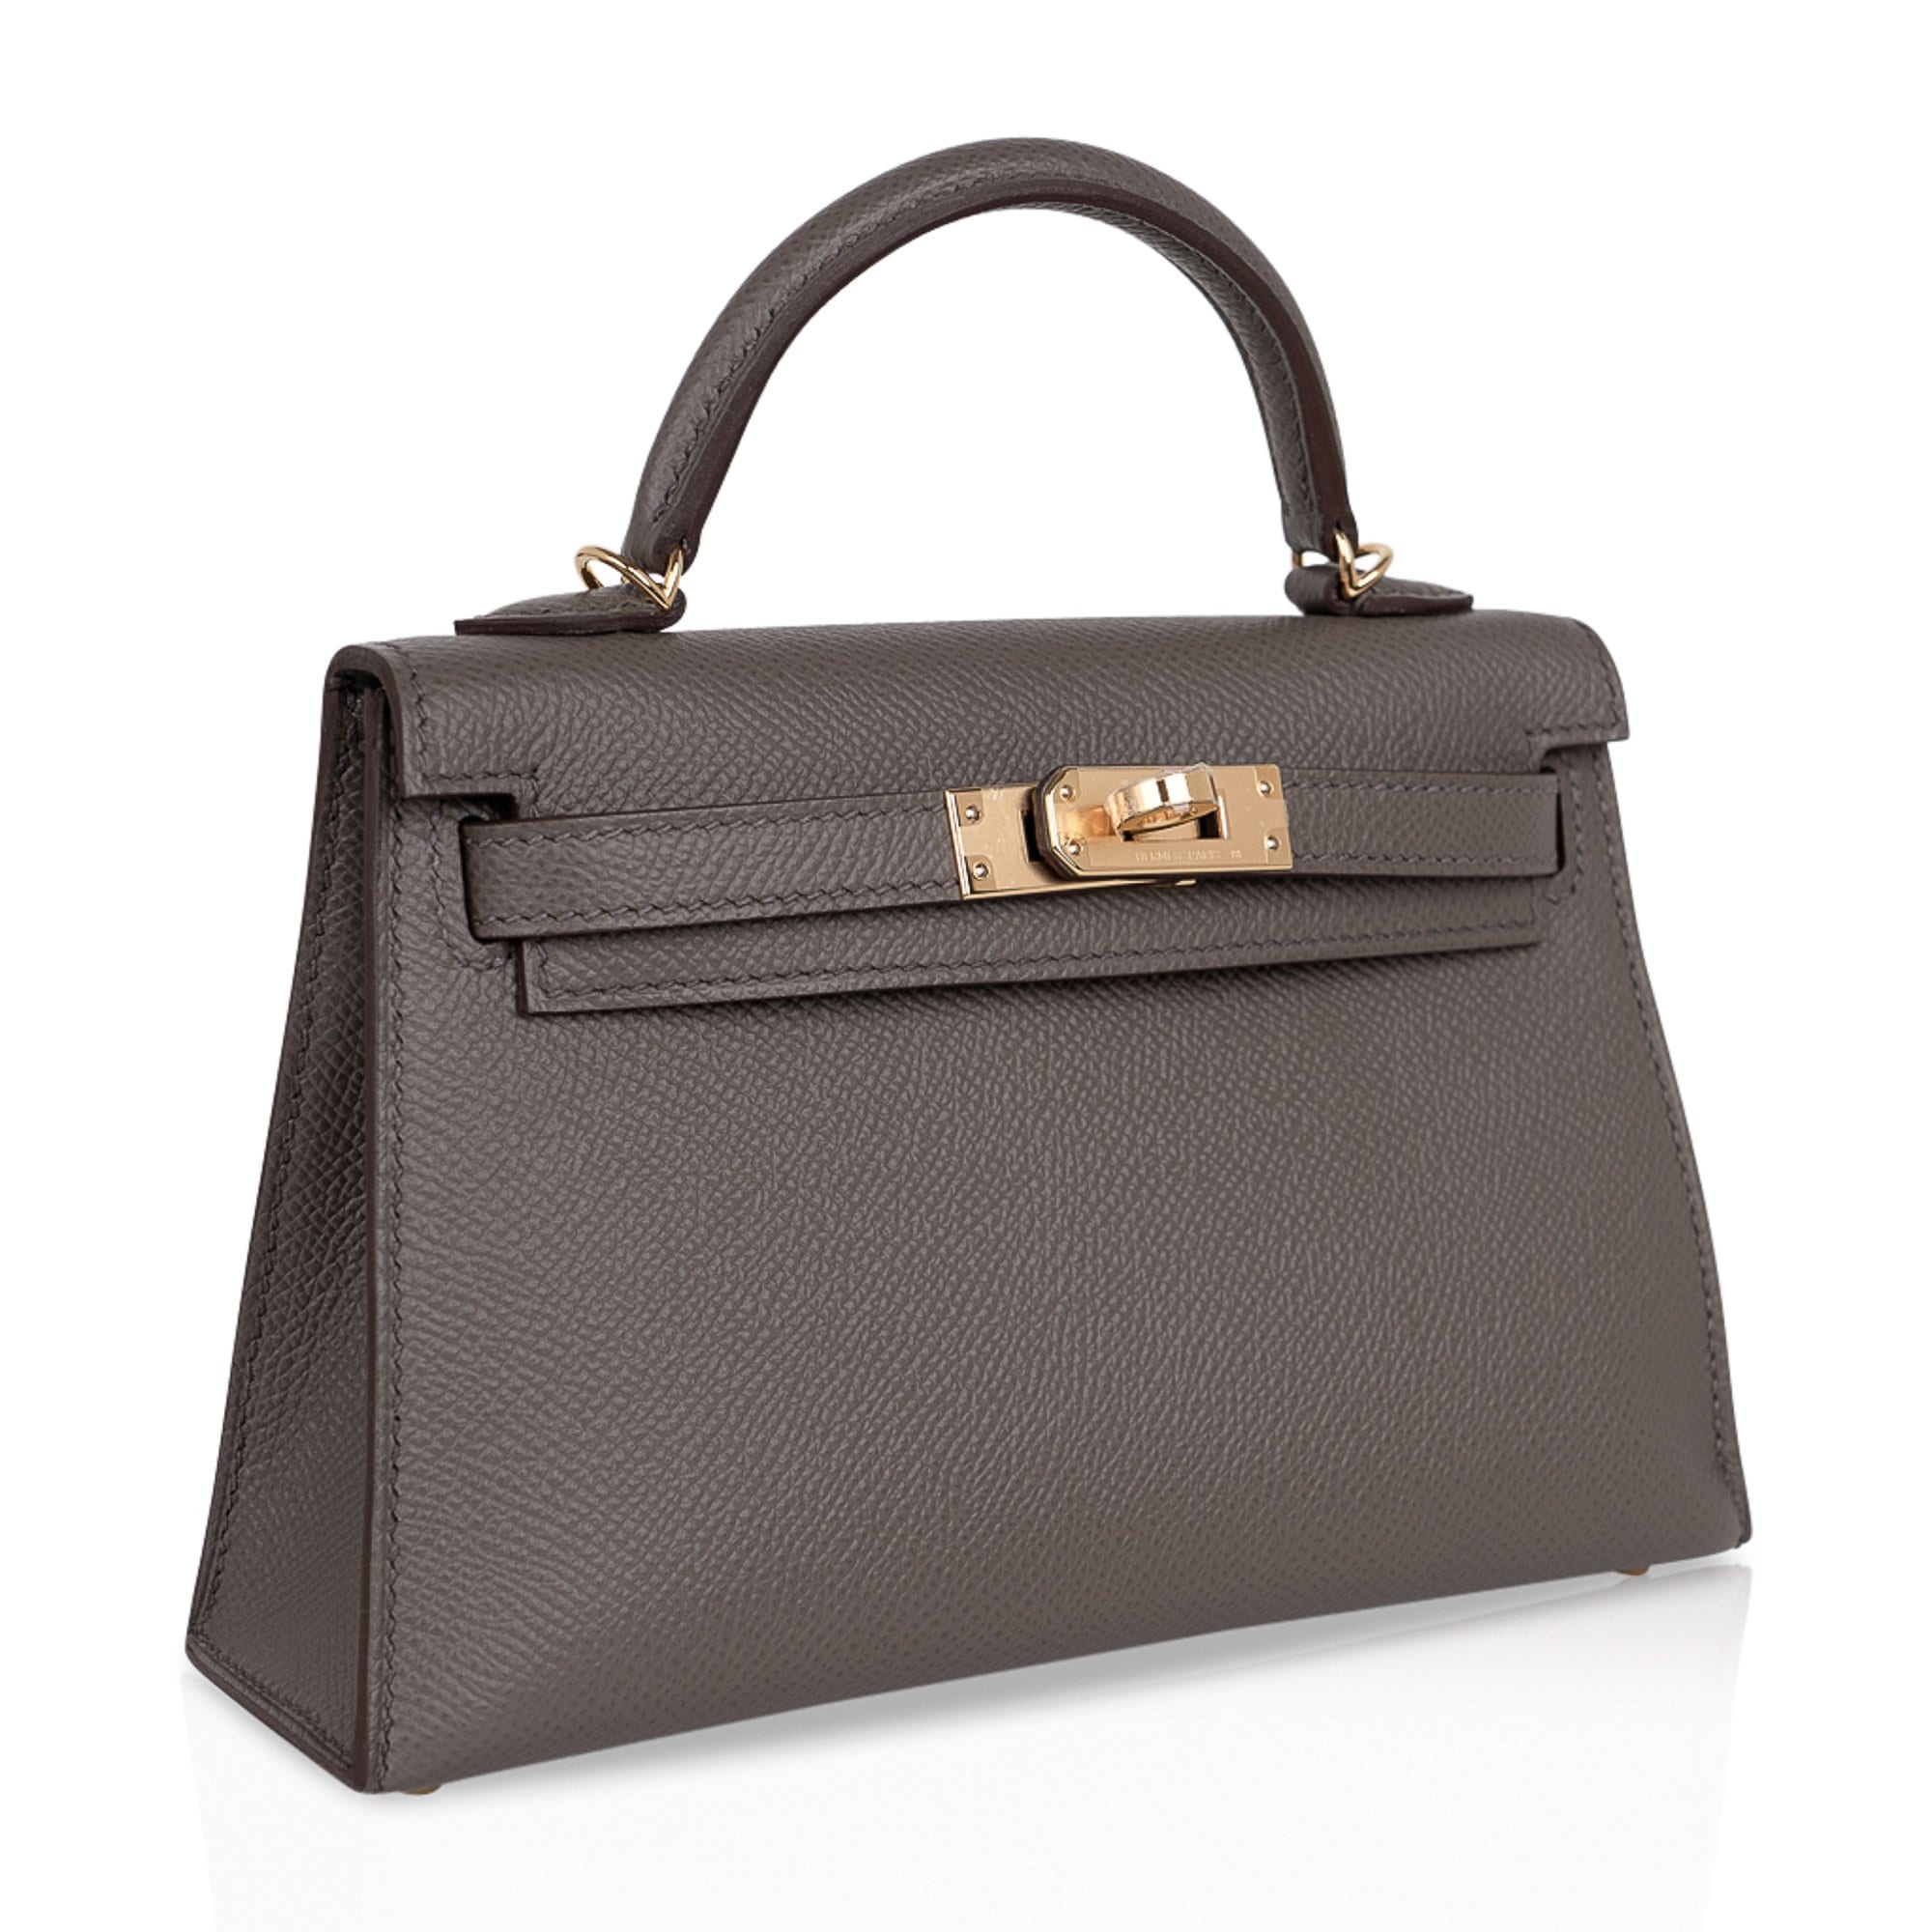 Hermes Kelly 20 Mini Sellier Bag Etain Epsom Leather Gold Hardware New w/Box